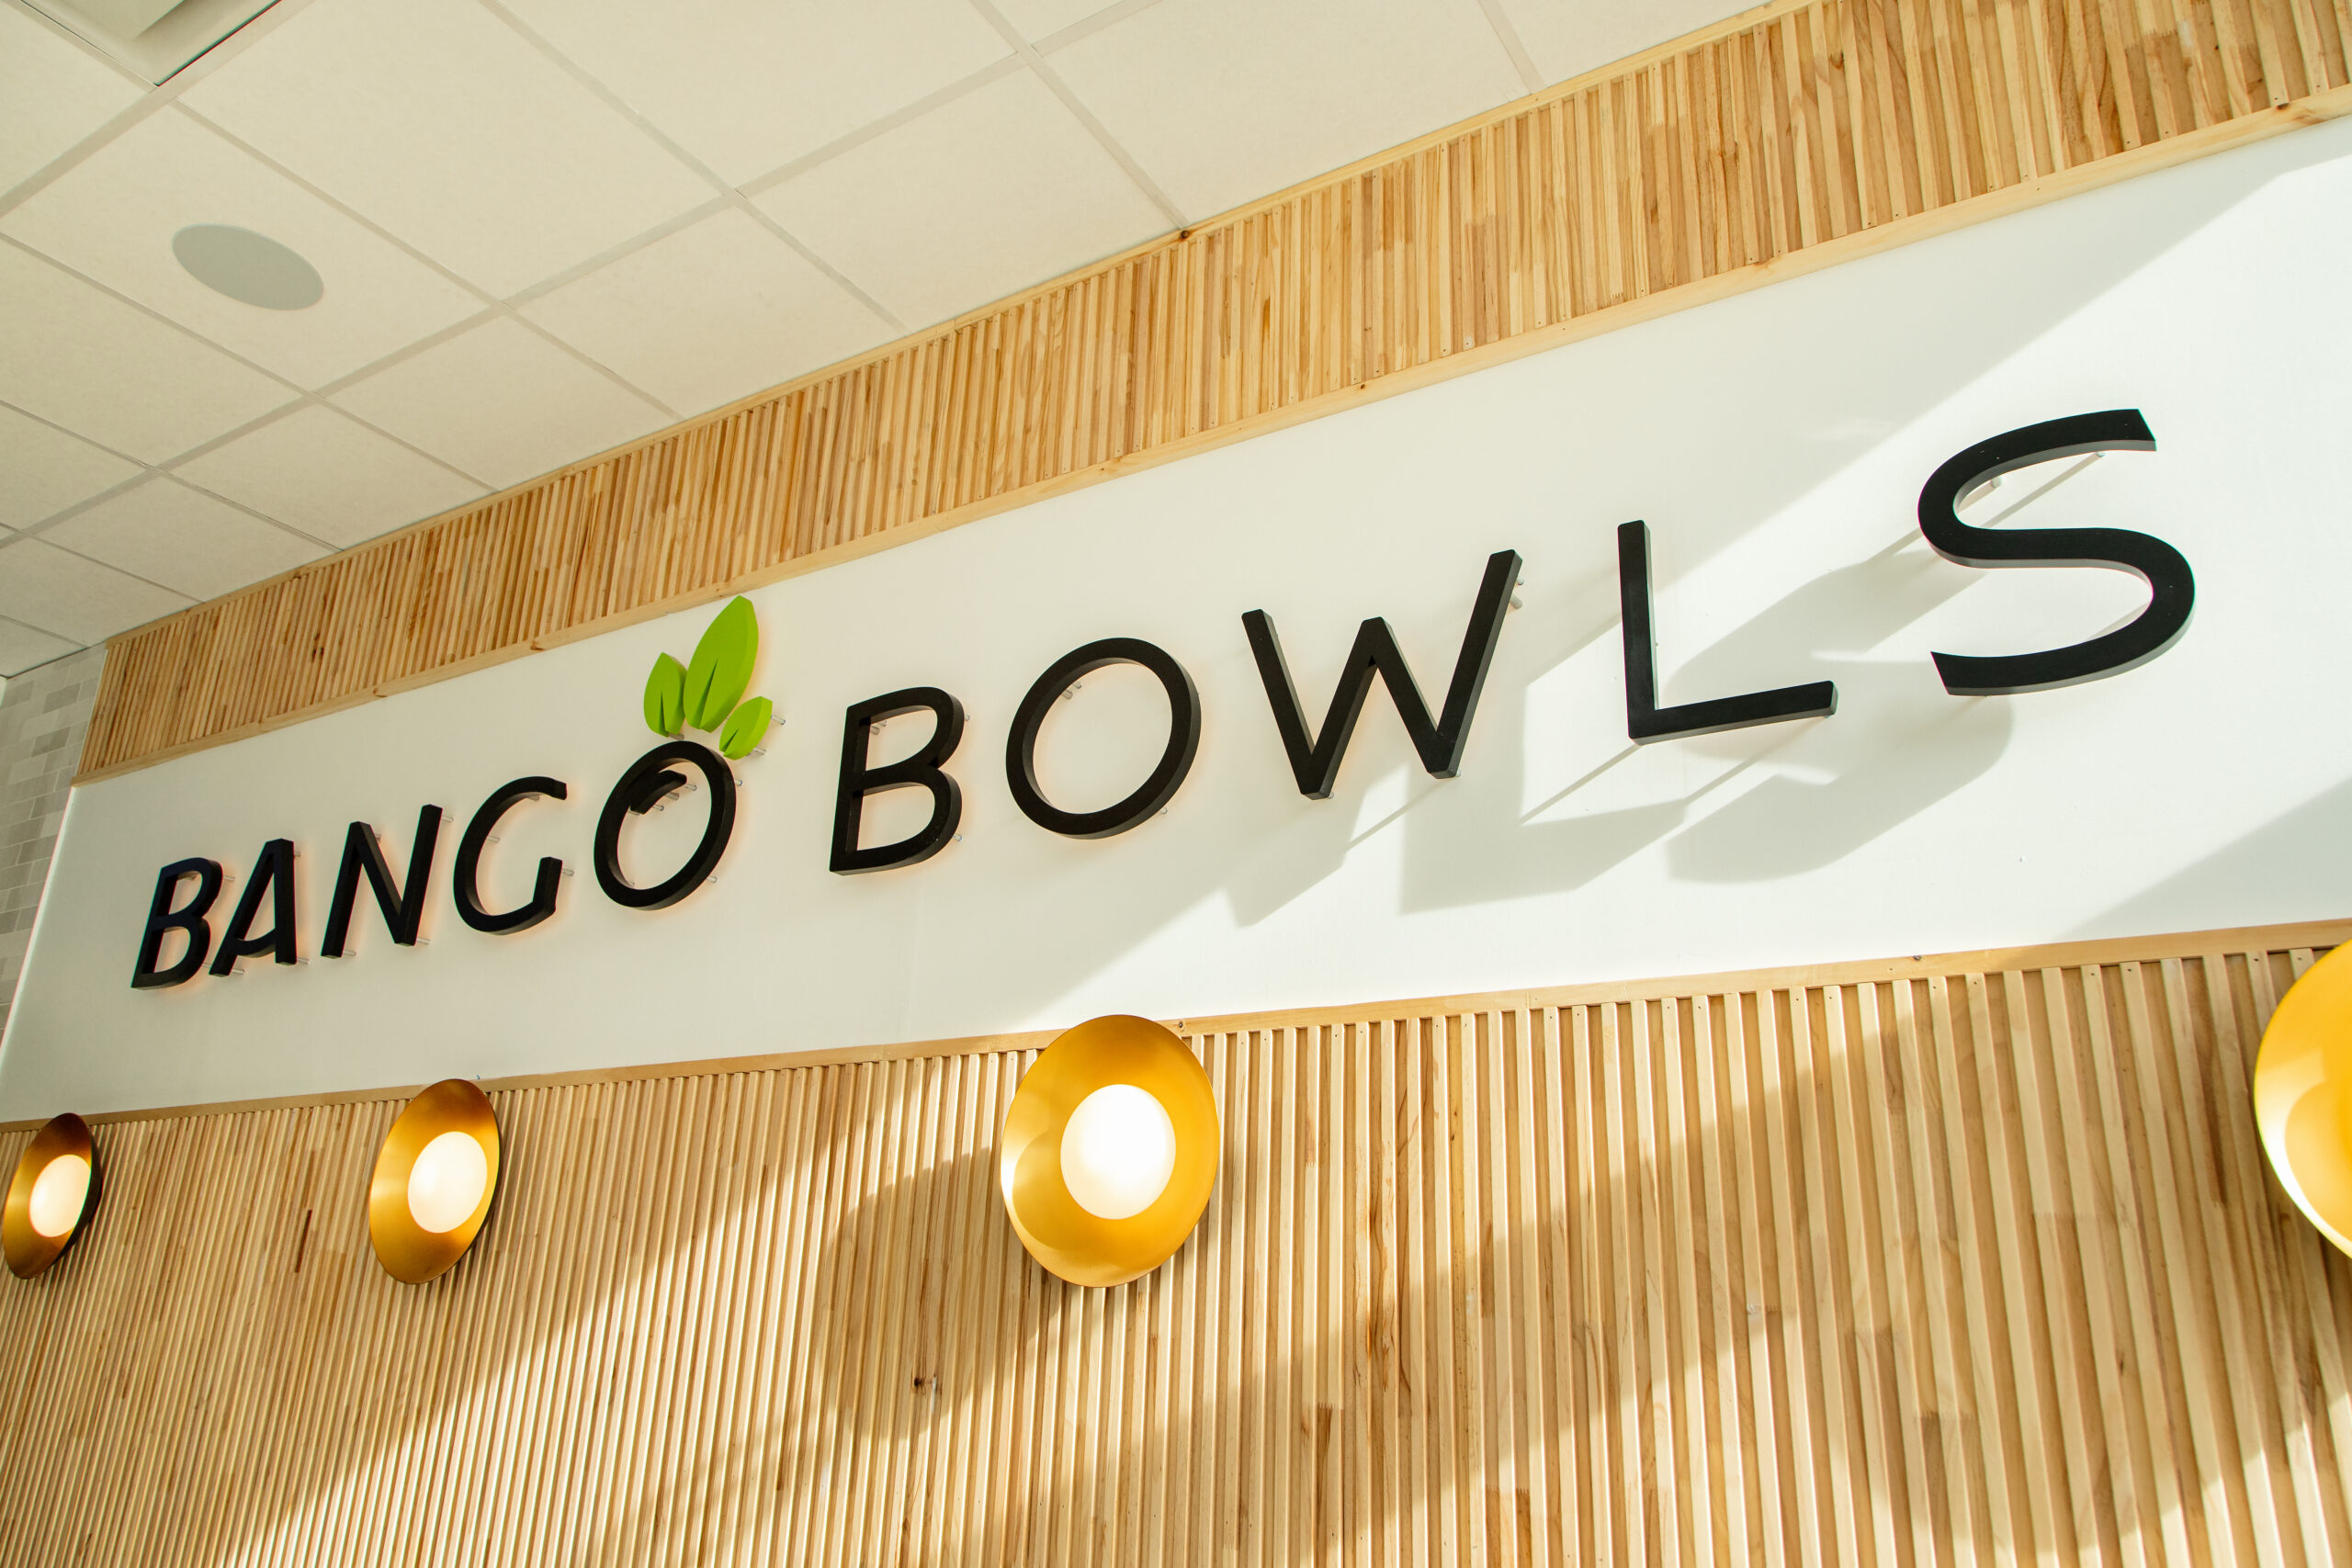 Bango Bowls hottest startup